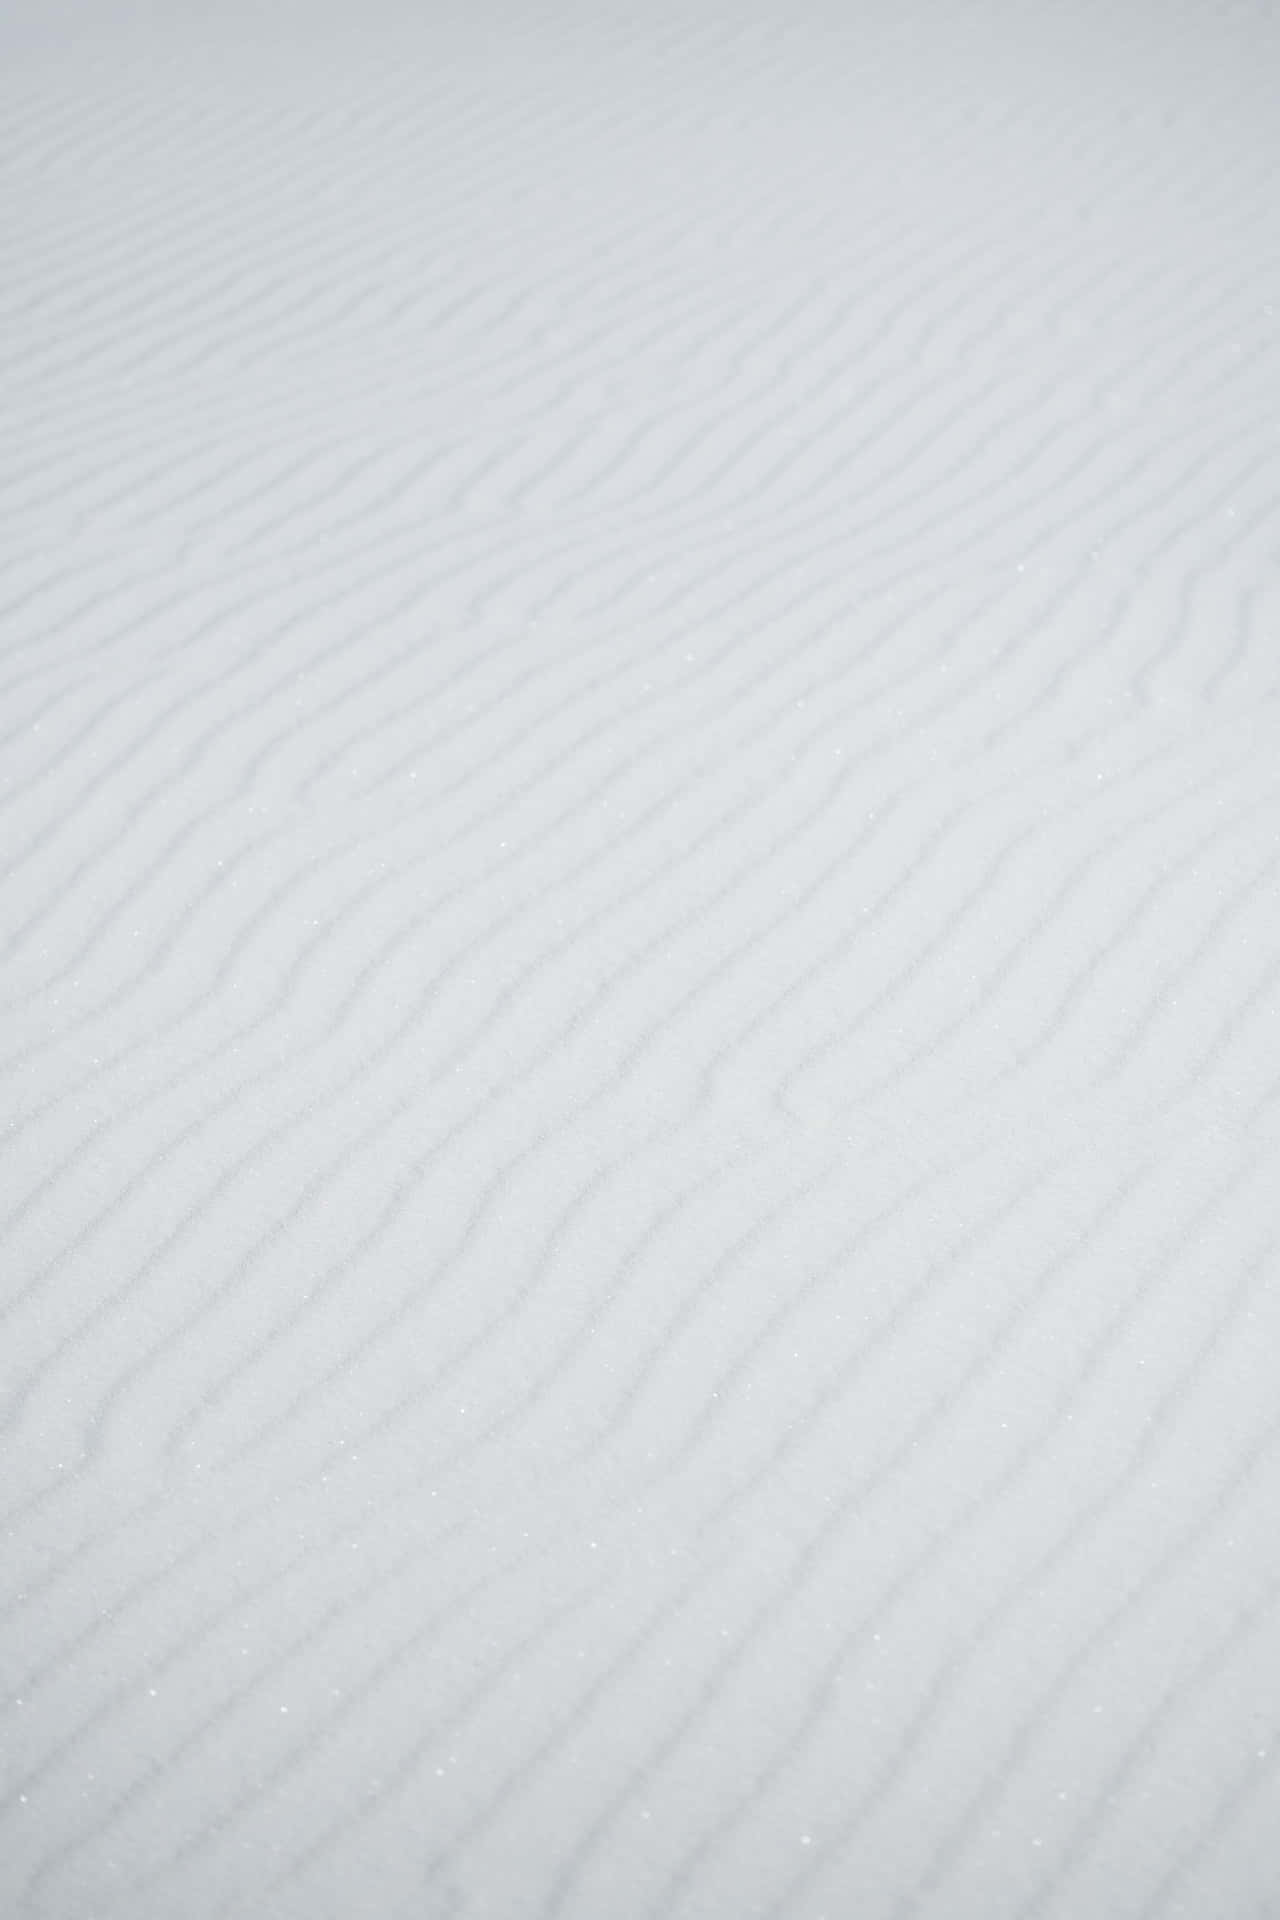 Hvid væg baggrund med skrå linjemønstre